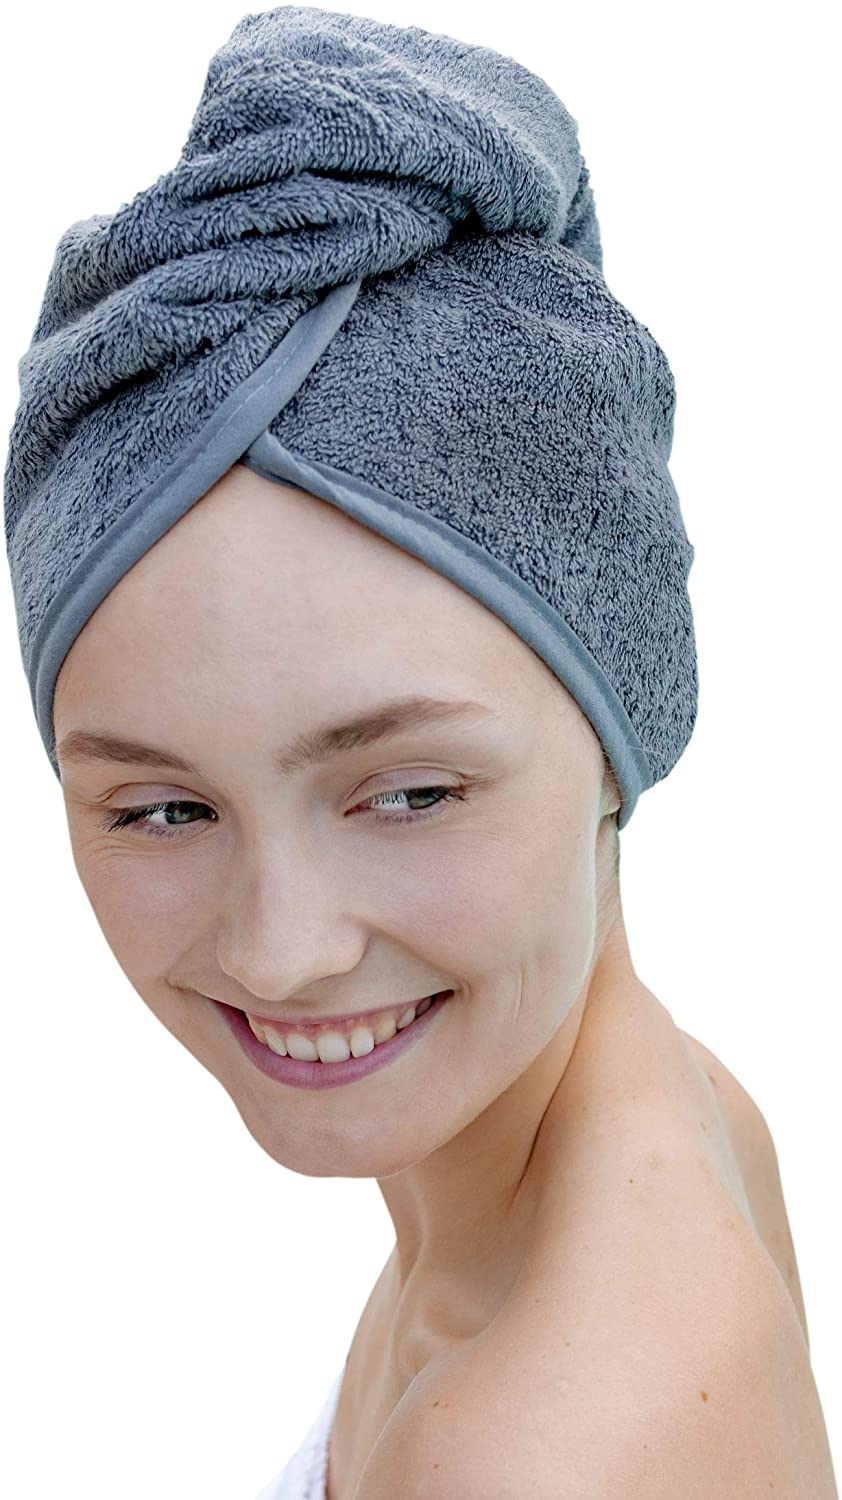 4 Haargummis für Kurze und Lange Haare – Turban Handtuch ist schnelltrocknend und saugstark Fuchsia LAYNENBURG Premium Haarturban mit Knopf aus 100% Baumwolle Haar-Handtuch inkl 